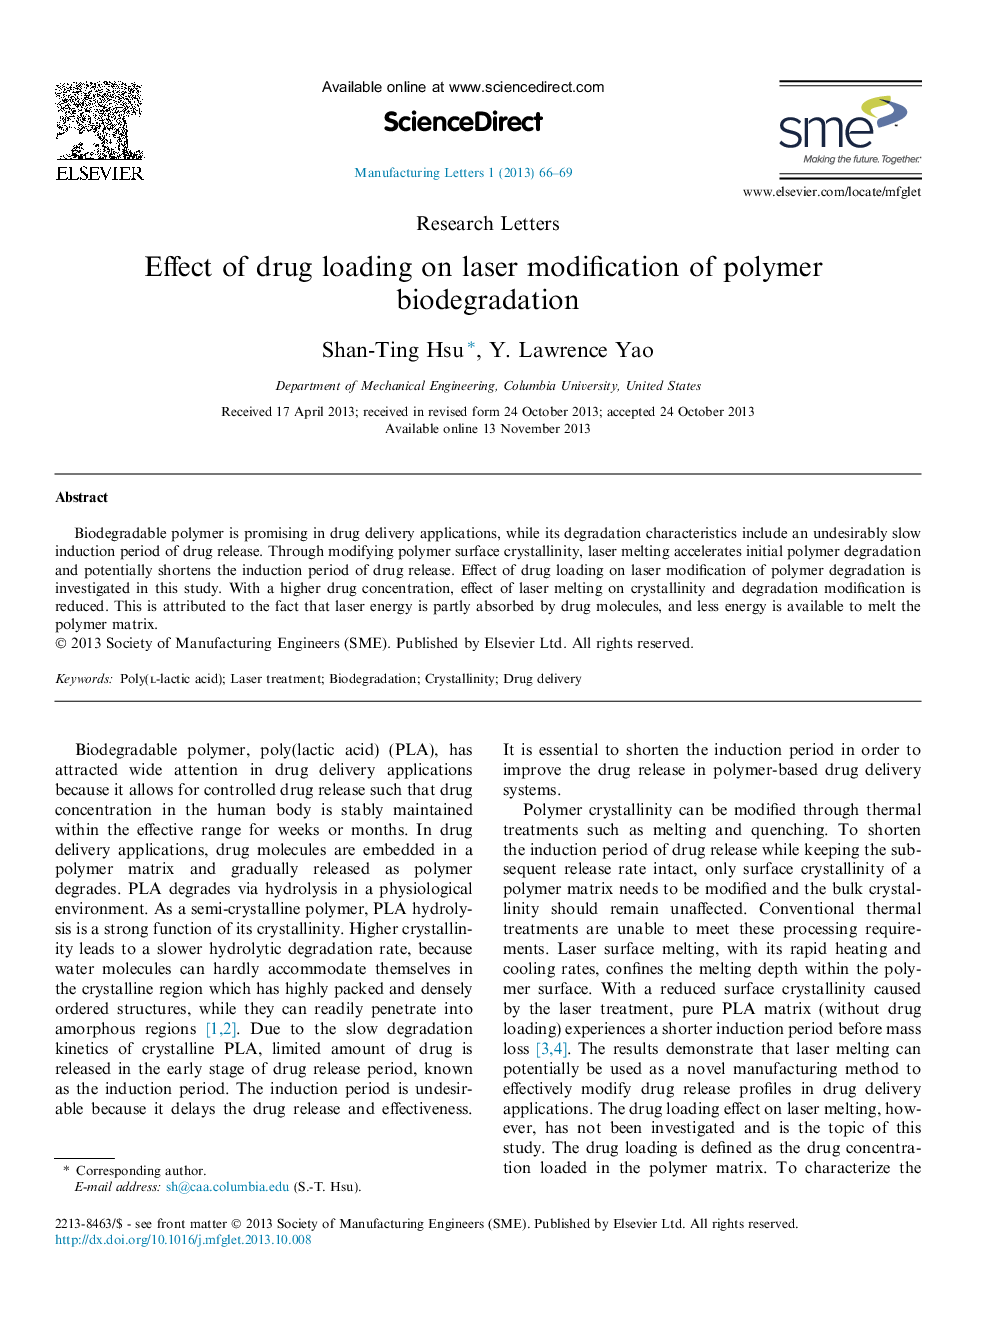 Effect of drug loading on laser modification of polymer biodegradation